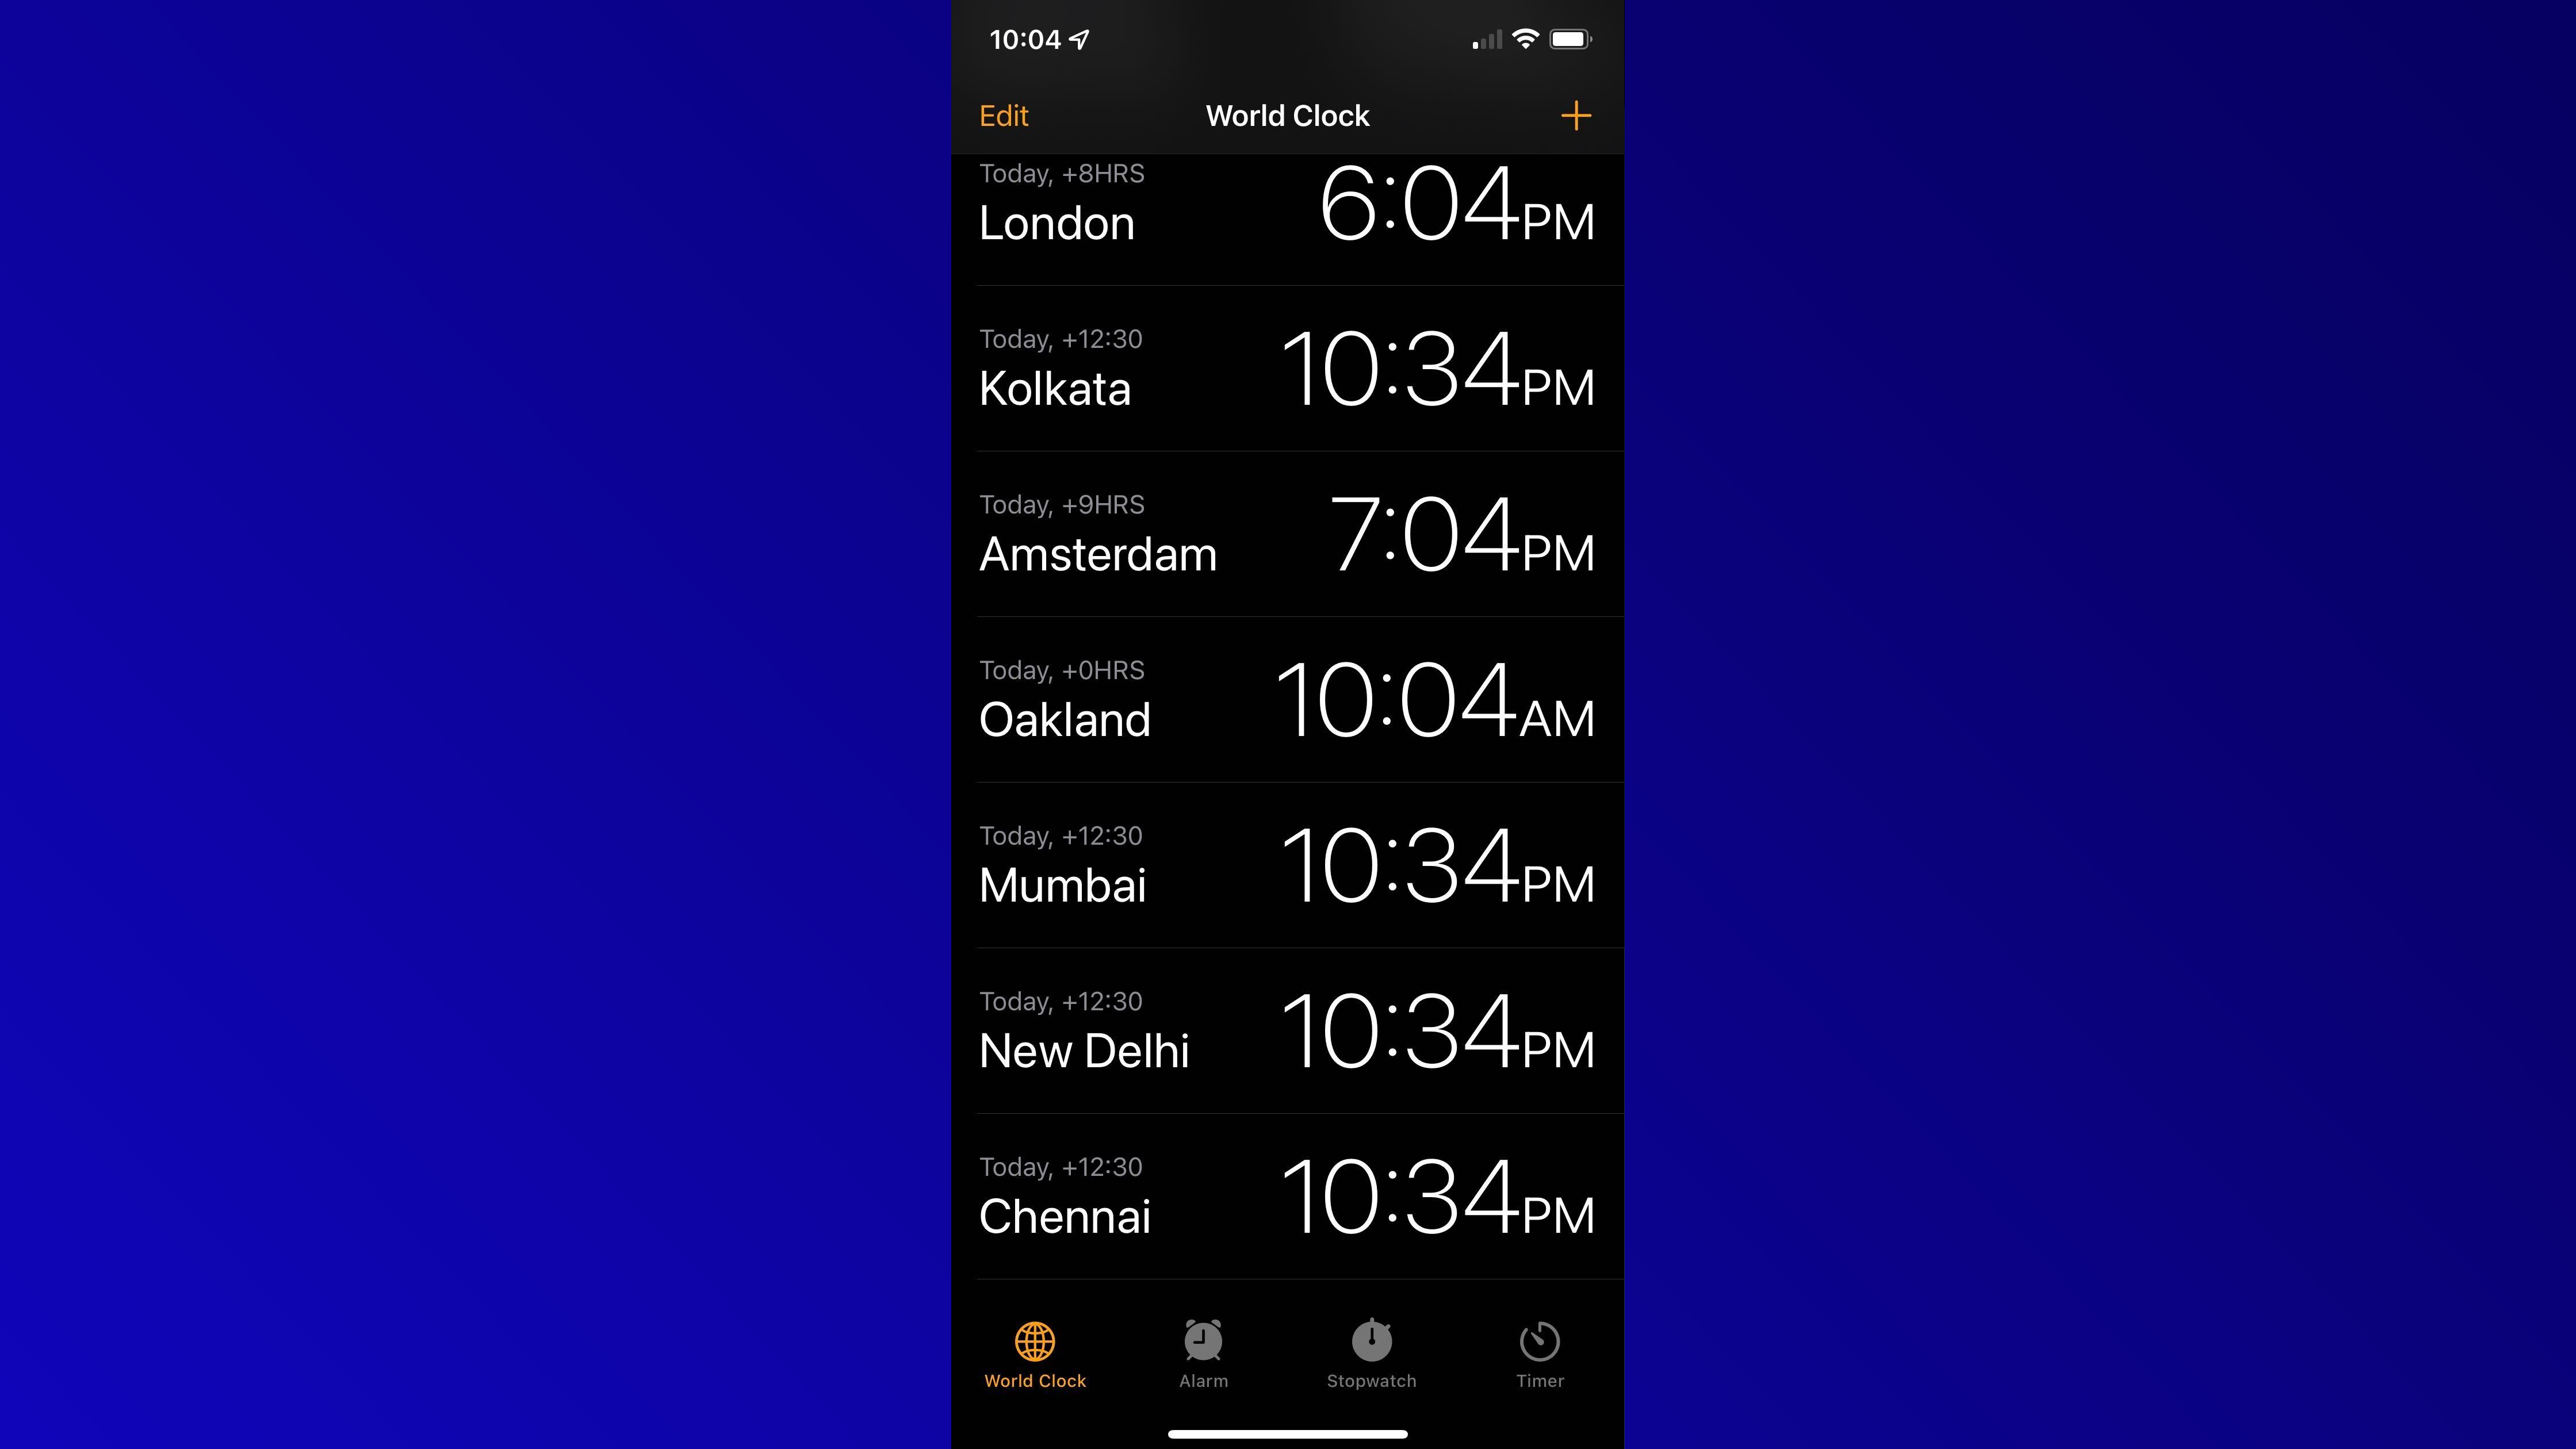 Hindistan'daki mevcut 4 şehrin tümünü gösteren ios 15 Dünya Saati liste görünümü